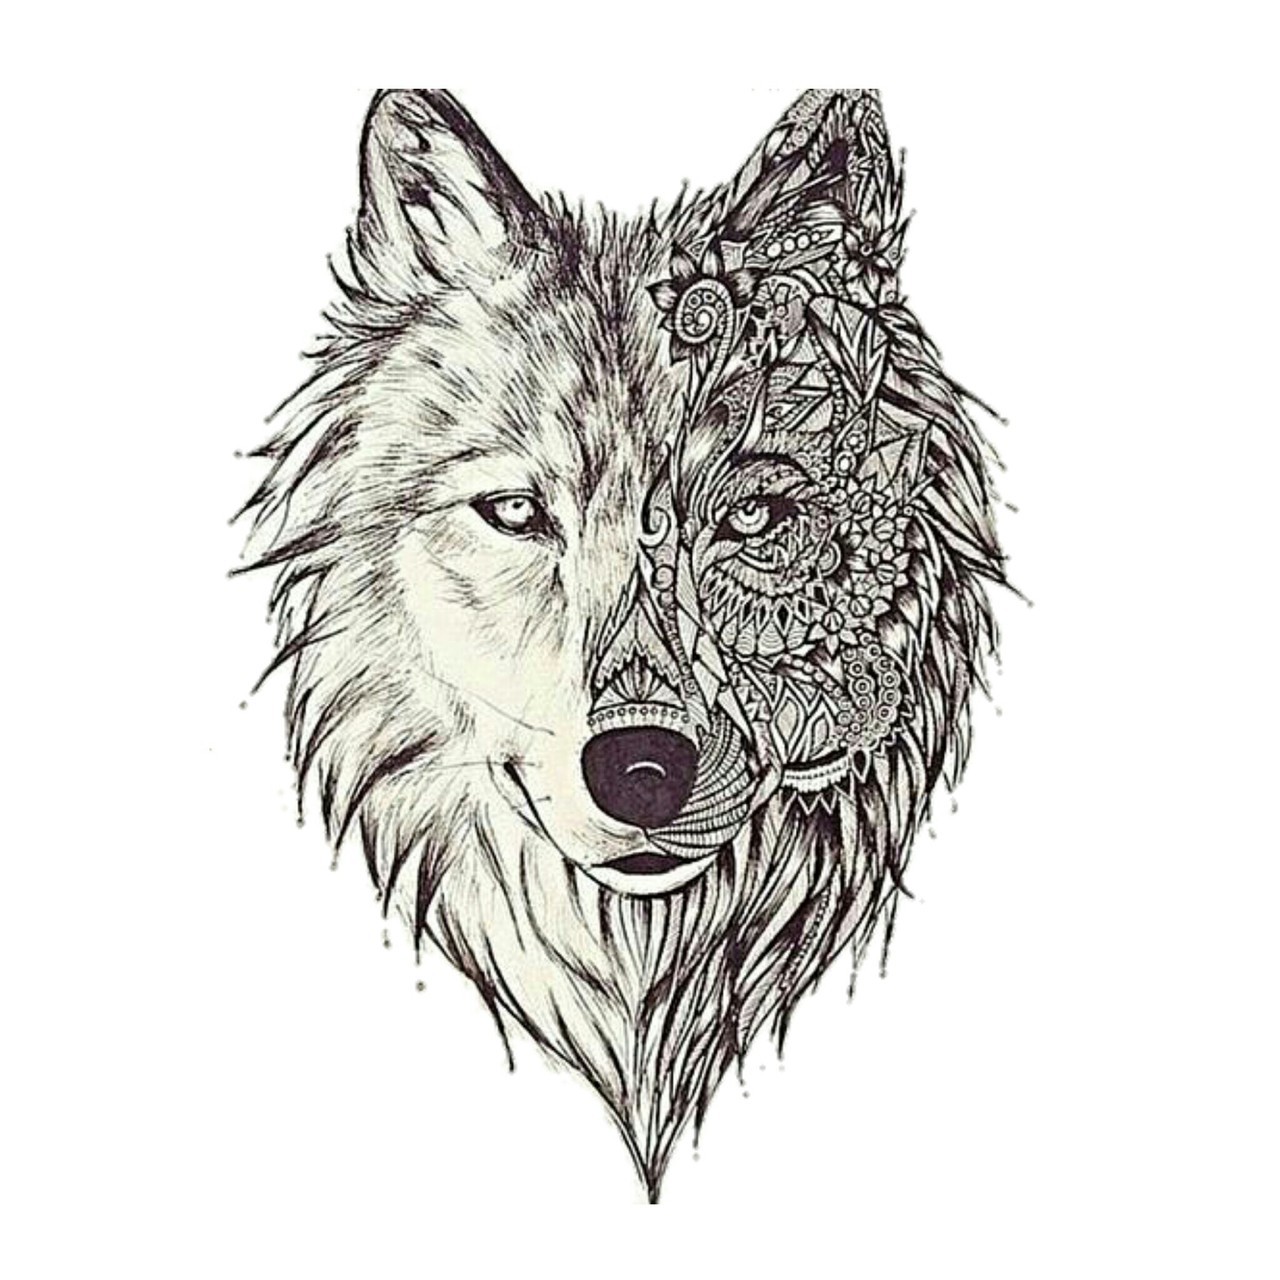 Wolf, Art, And Drawing Image - Wolf Pattern Tattoo - HD Wallpaper 